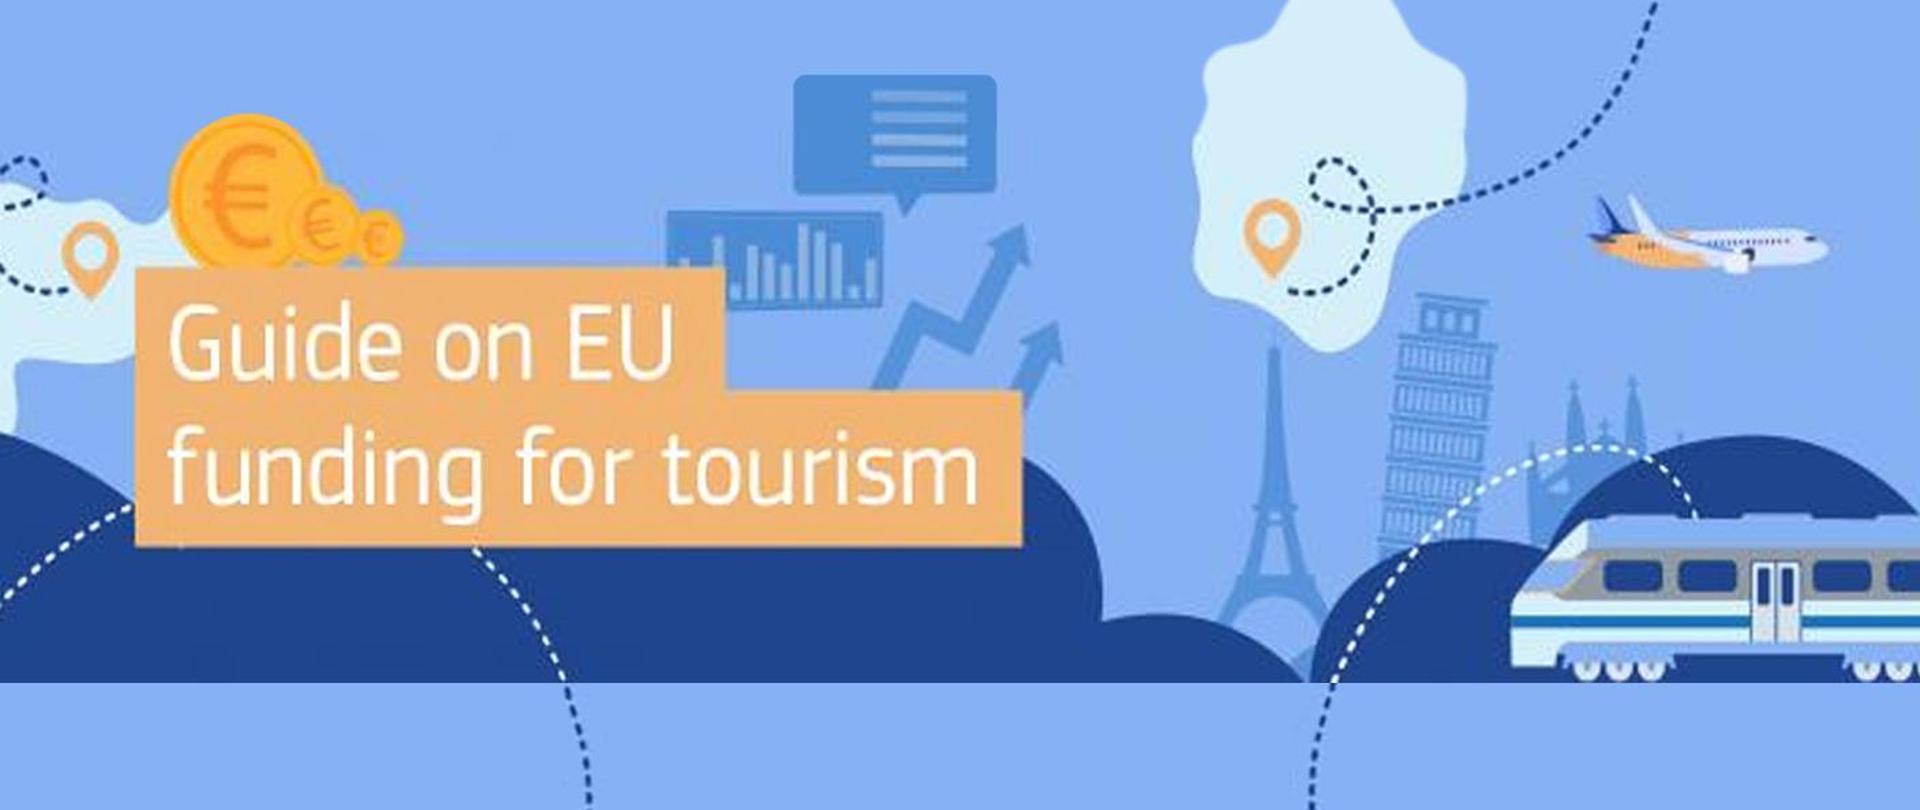 Przewodnik po finansowaniu unijnym na turystykę - napis w języku angielskim "Guide on EU funding for tourism", w tle piktogramy budowli europejskich, samolot, pociąg, wykresy i strzałki oraz symbol waluty Euro